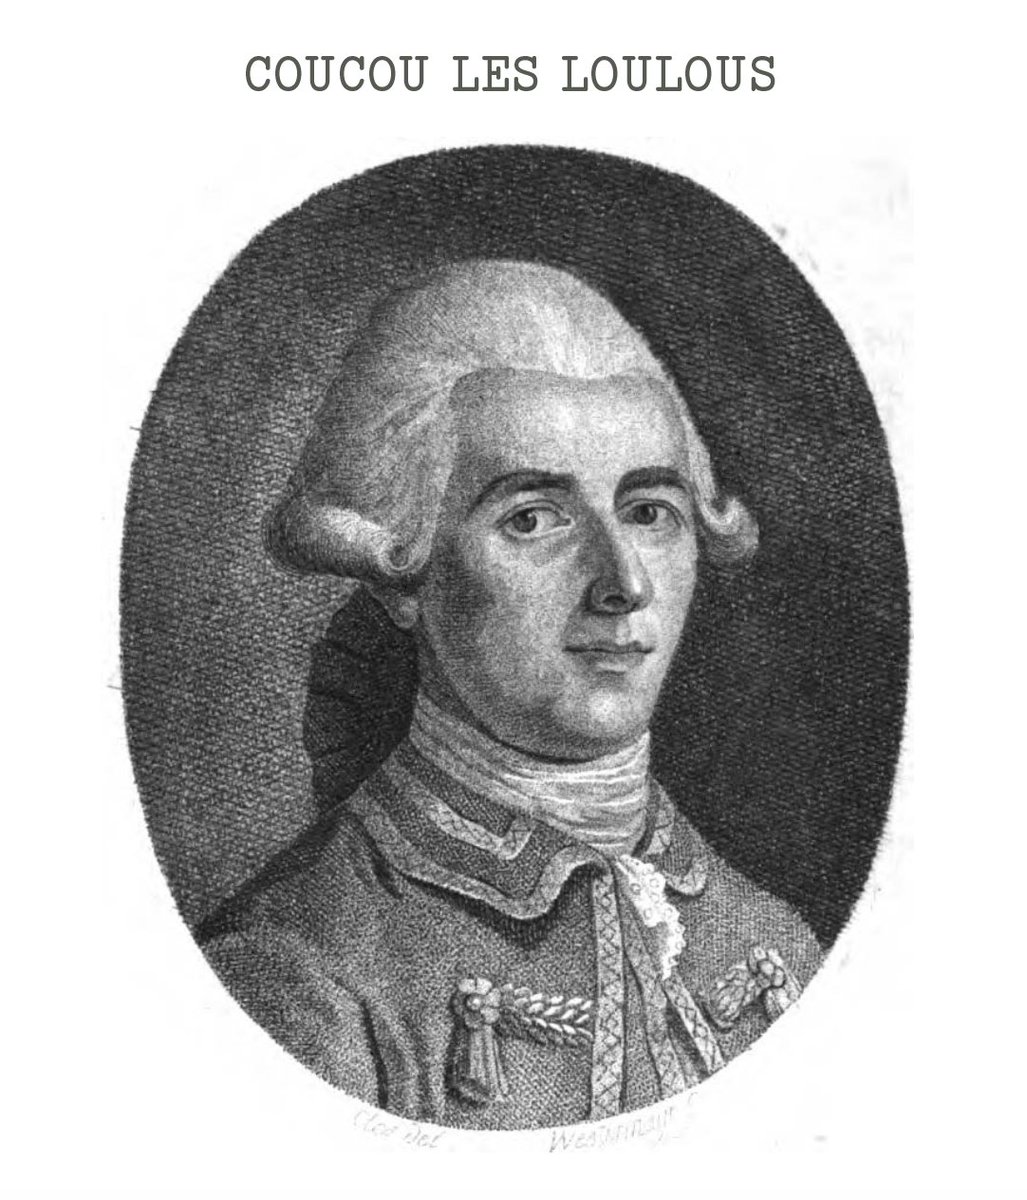 1784 : Cassini III meurt de la variole. Son fils Jean-Domnique reprend le flambeau. C'est Casssini IV, dites bonjour au Monsieur !